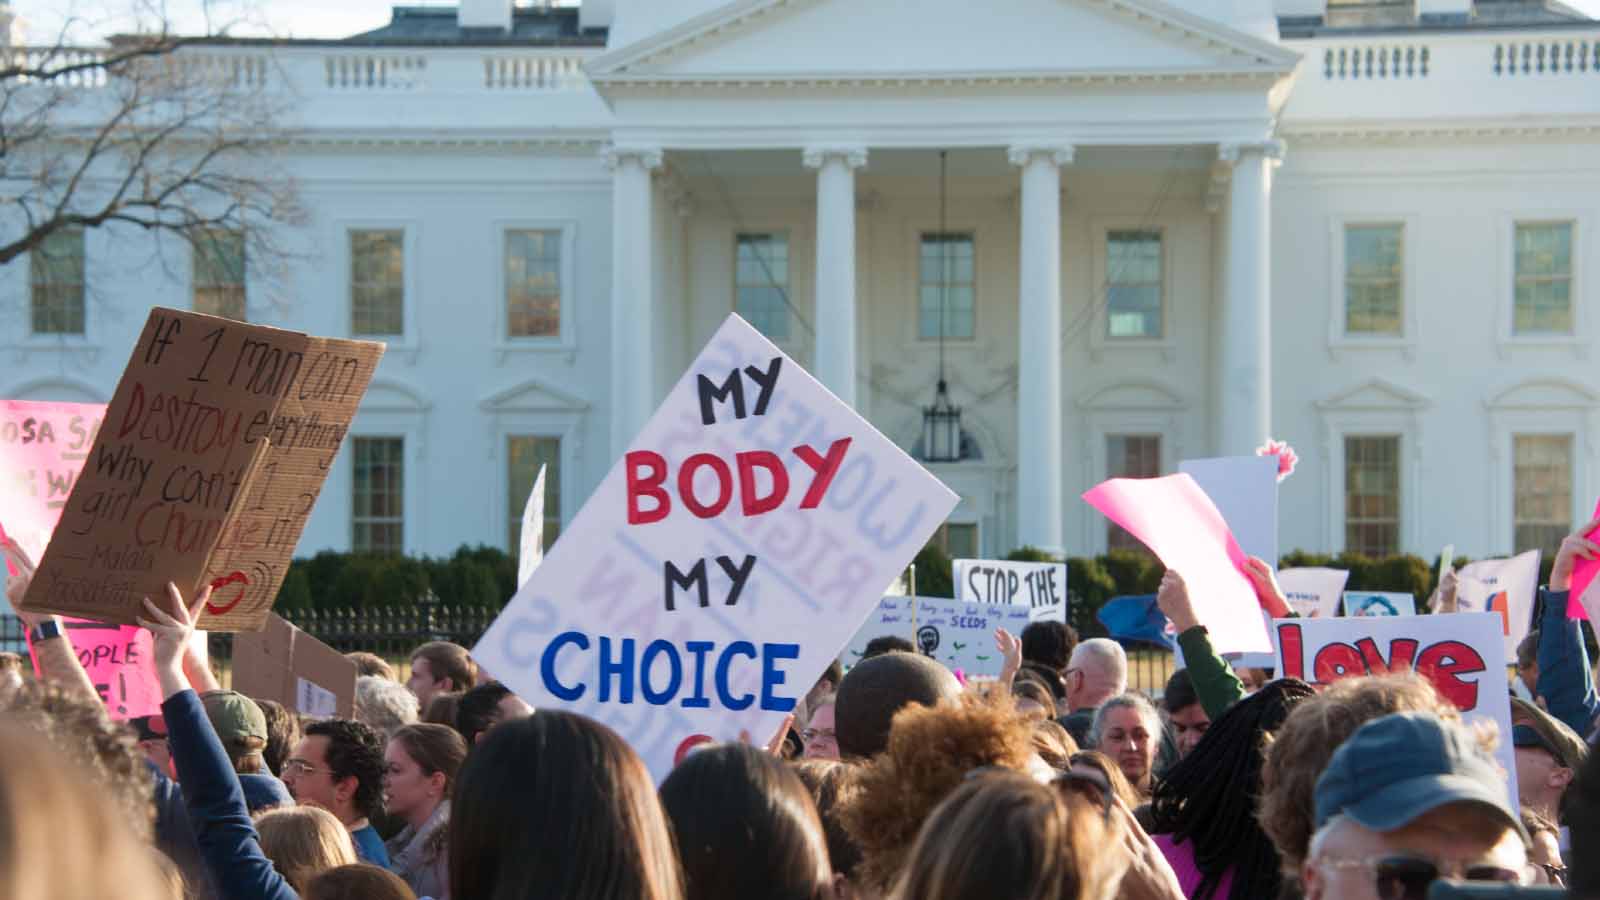 הפגנות נשים מול הבית הלבן במחאה על מדיניות הנשיא טראמפ (צילום: Rena Schild / Shutterstock.com)